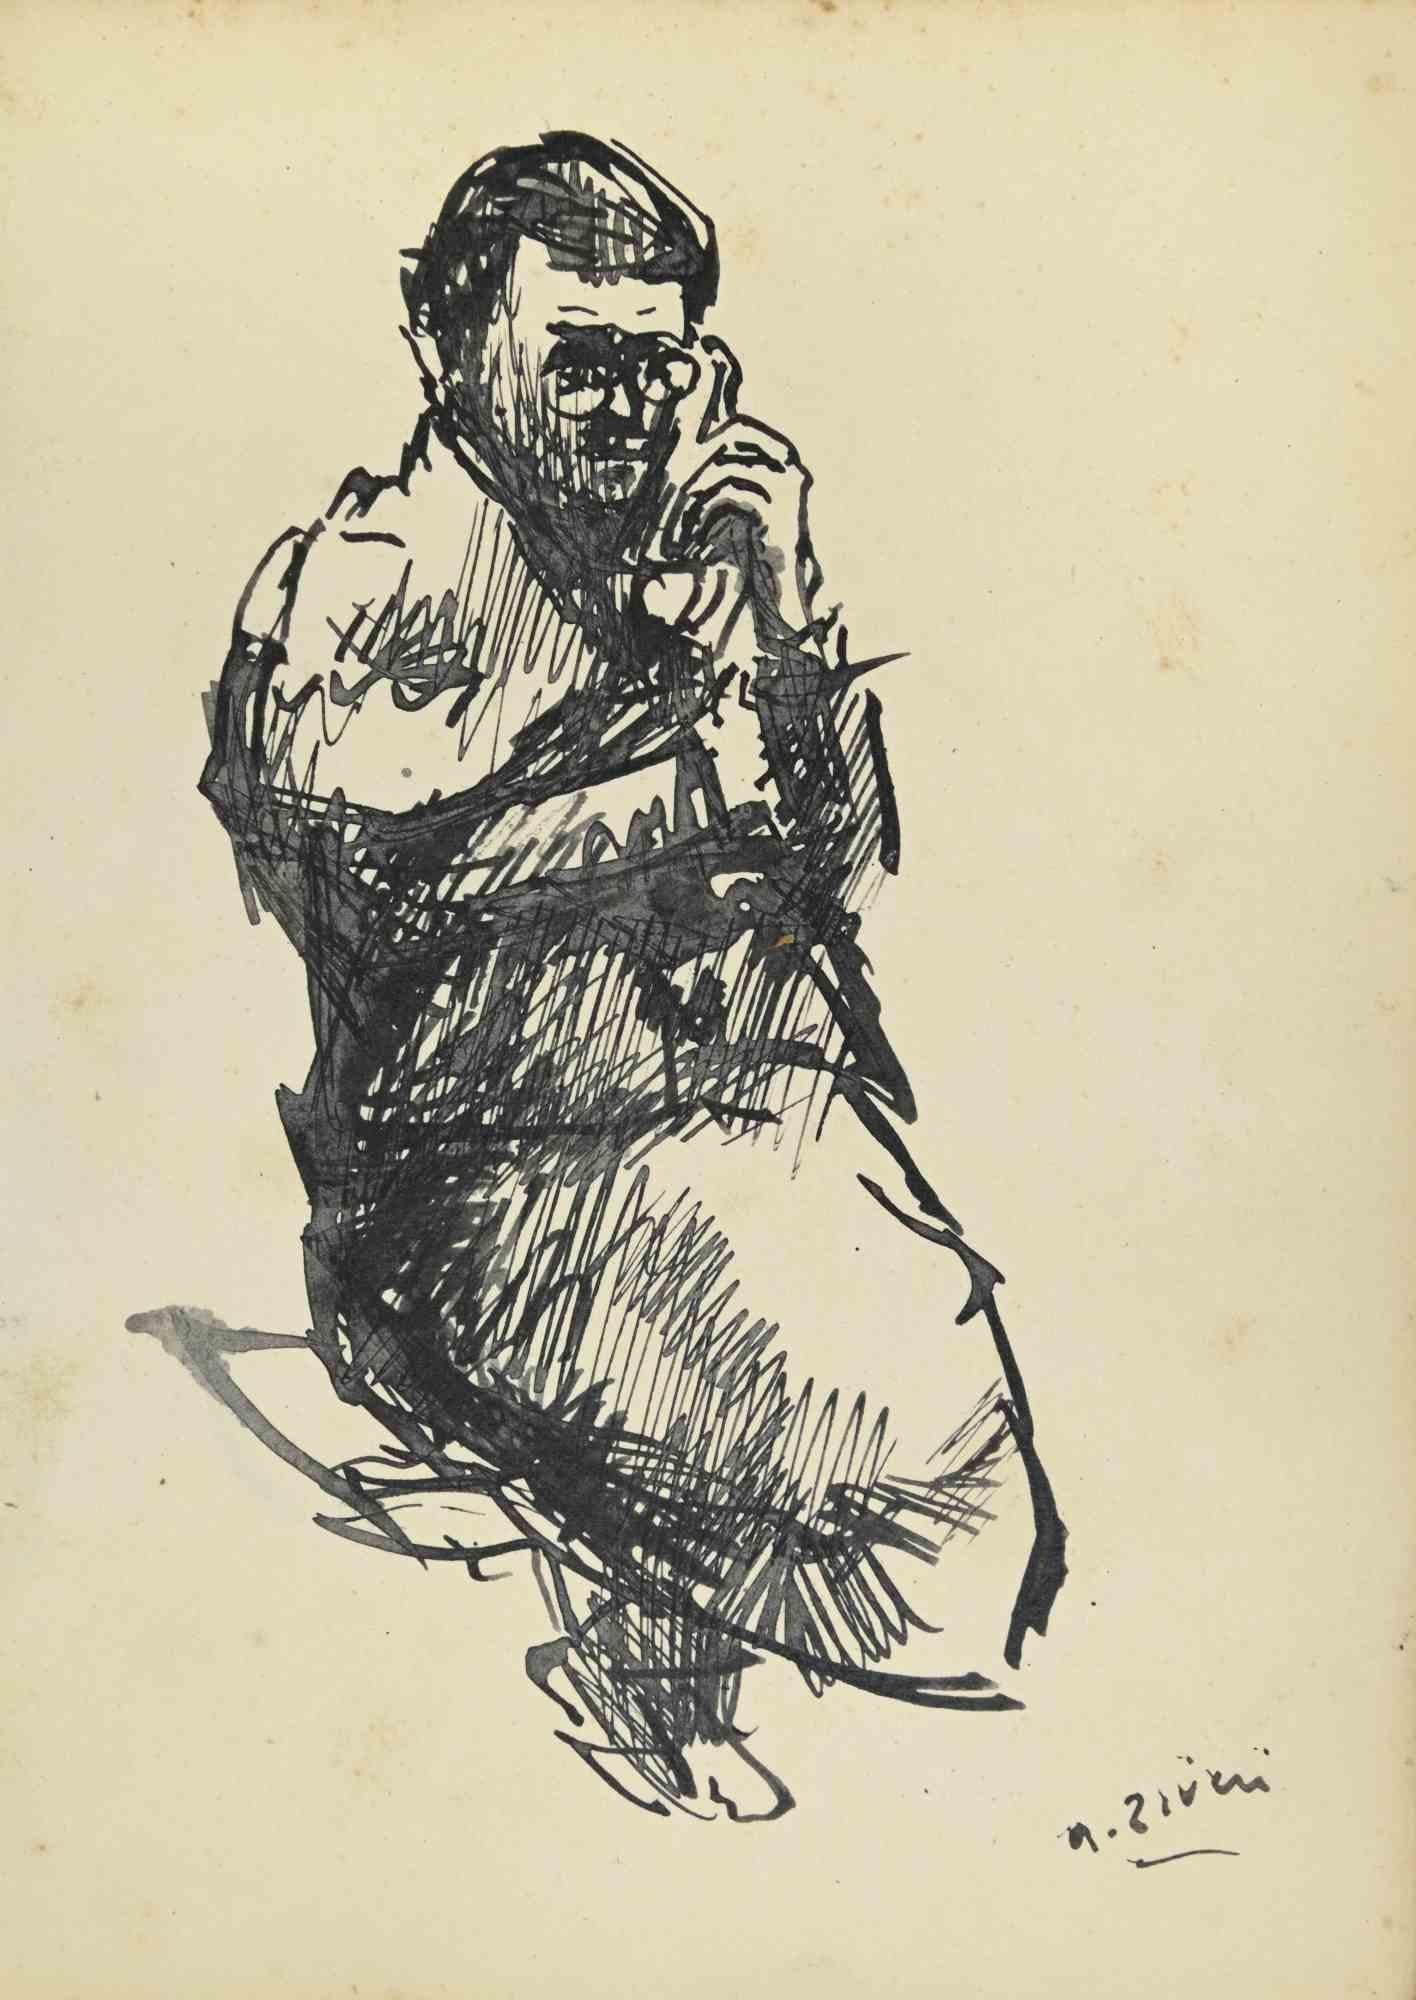 Der Mann am Telefon ist eine Zeichnung von Alberto Ziveri aus den 1930er Jahren.

Aquarell auf Papier.

Handsigniert.

In gutem Zustand.

Das Kunstwerk wird durch geschickte Striche meisterhaft dargestellt.

Alberto Ziveri (Rom, 1908 - 1990), der